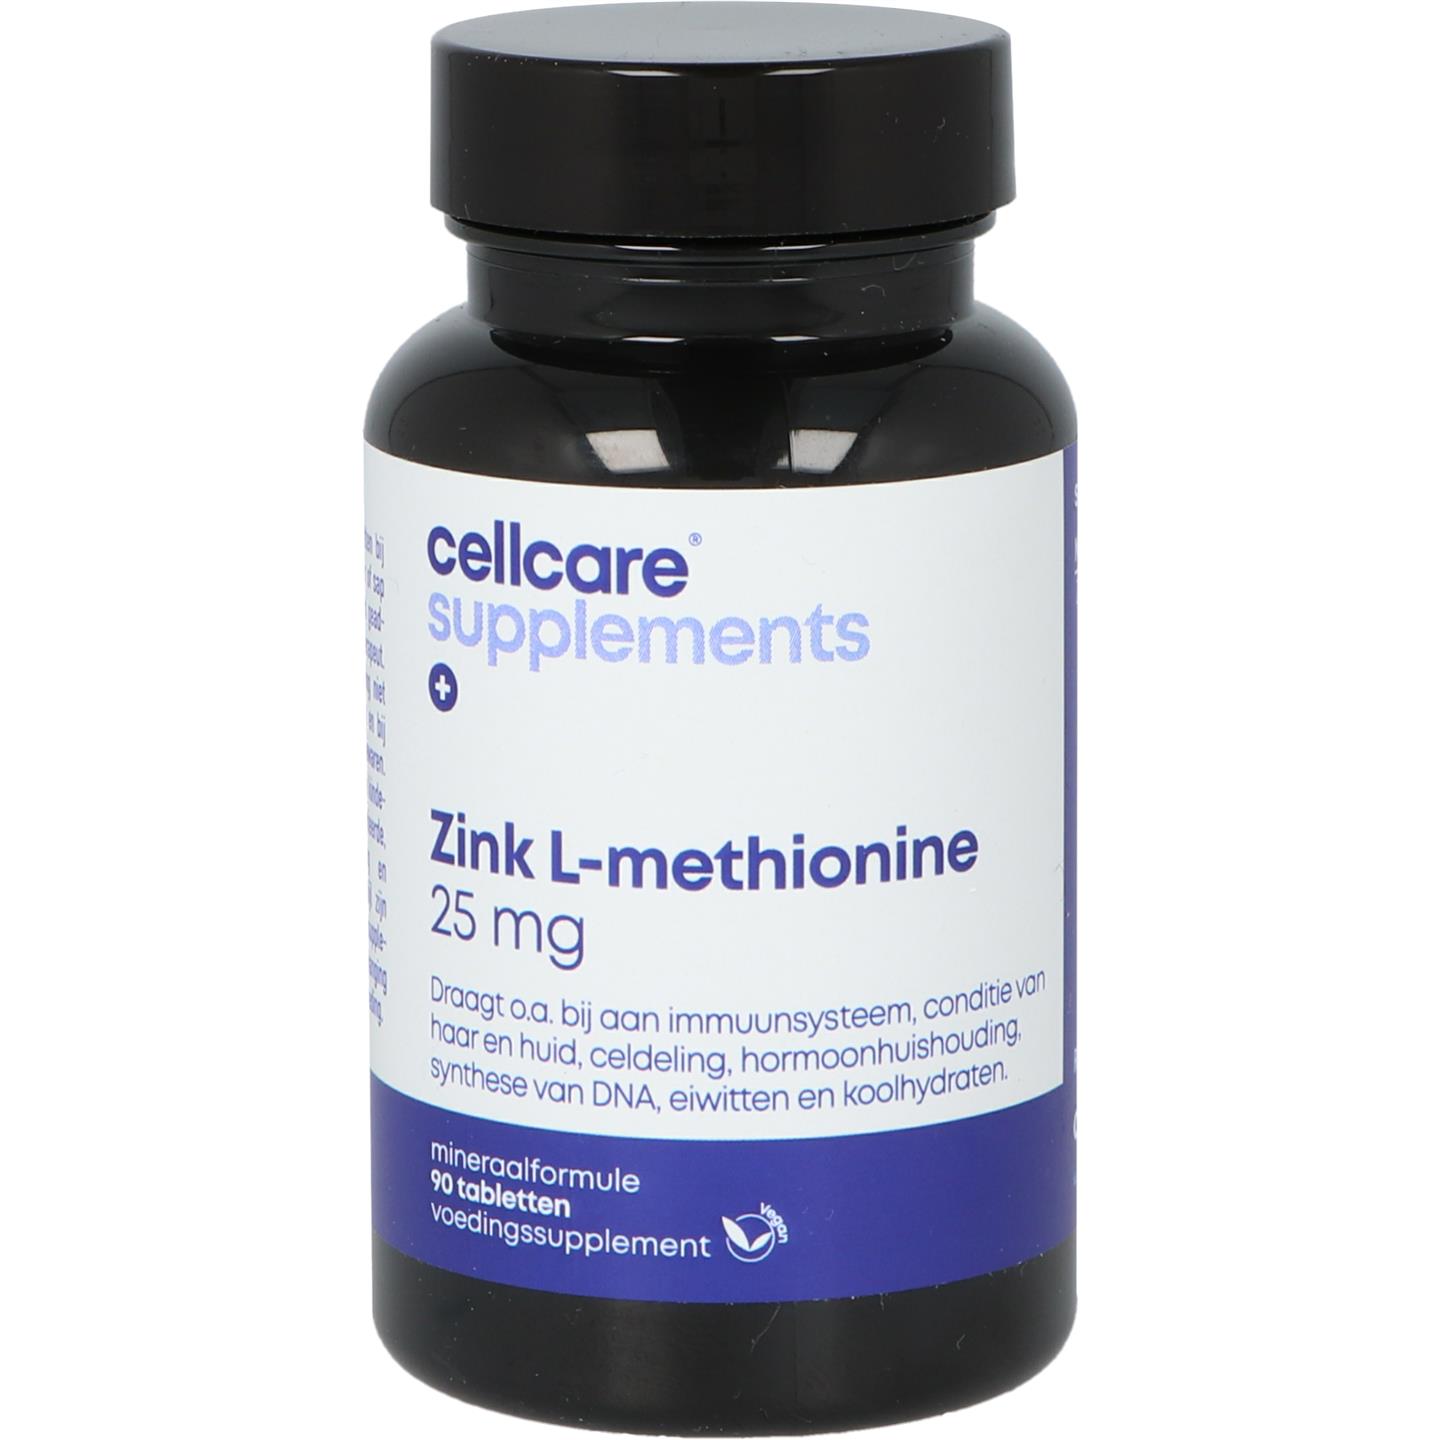 Zink L-methionine